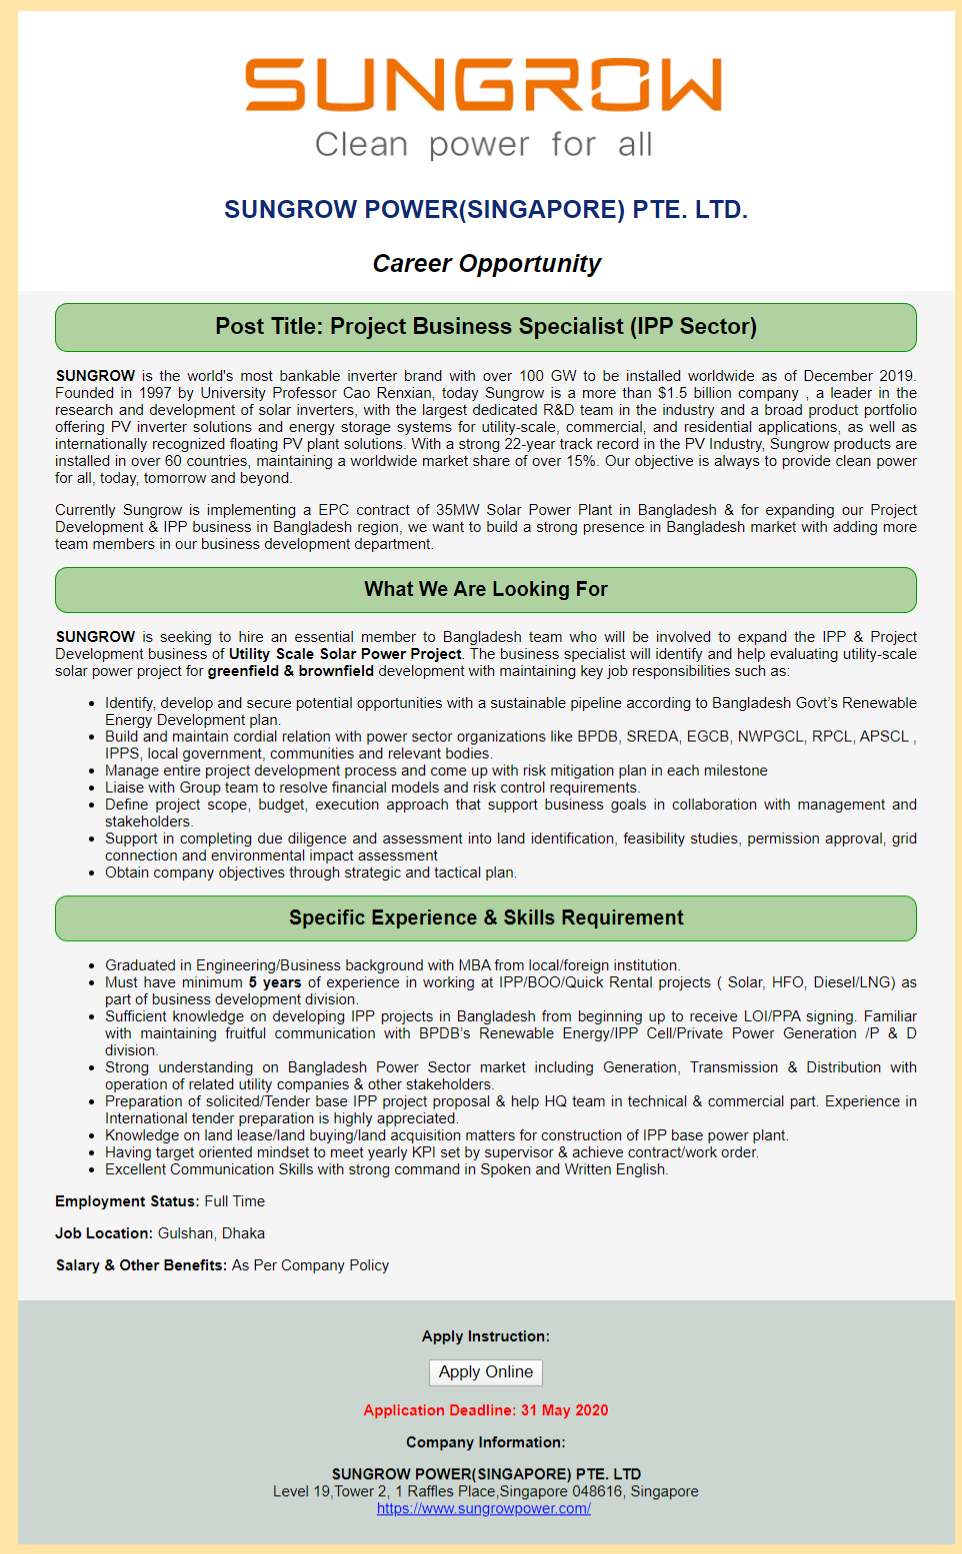 Sungrow Power (Singapore) Pte. Ltd Job Circular 2020